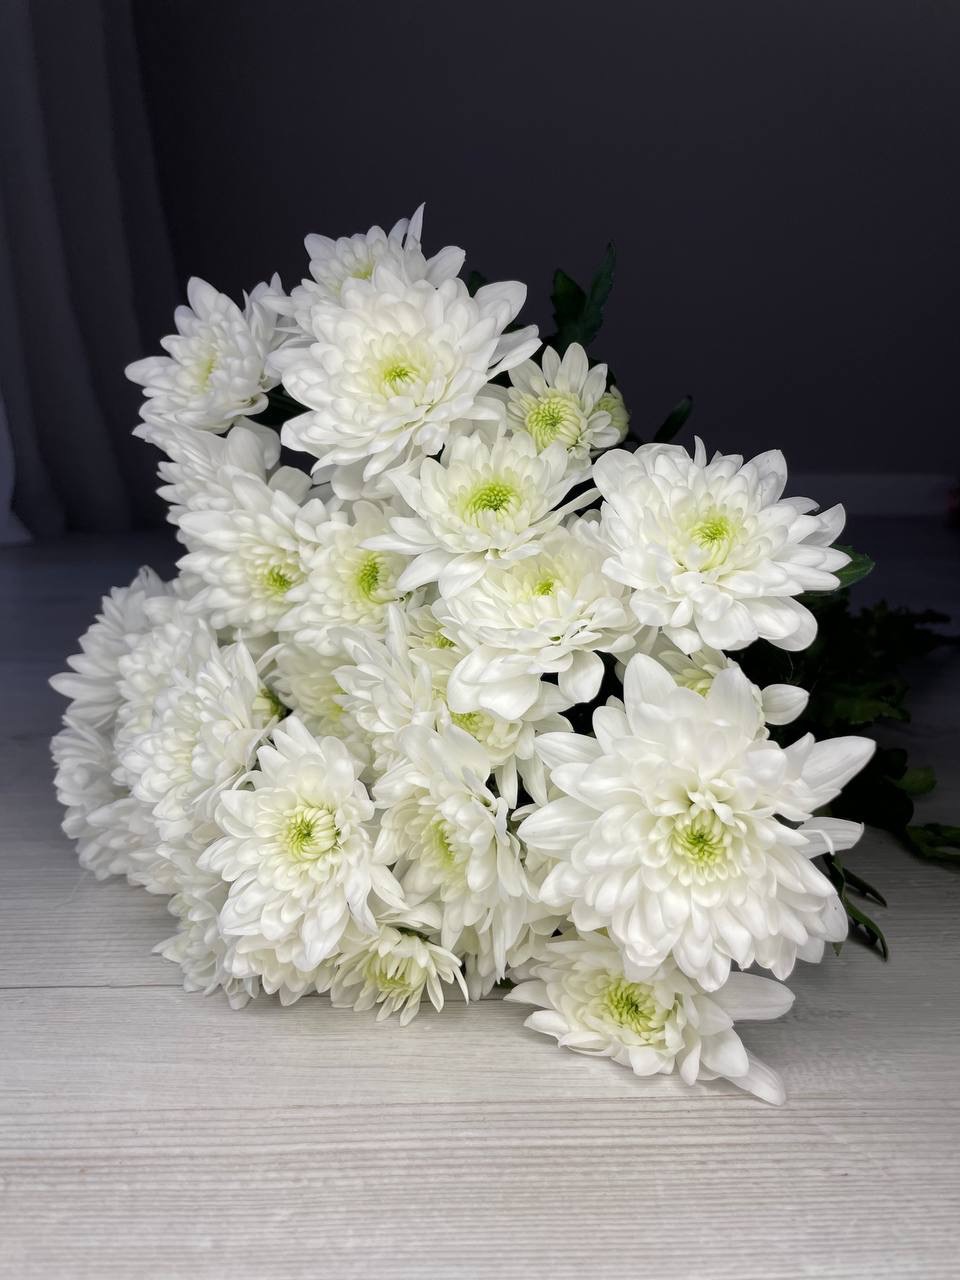 Хризантема кустовая - 300 ₽, заказать онлайн.